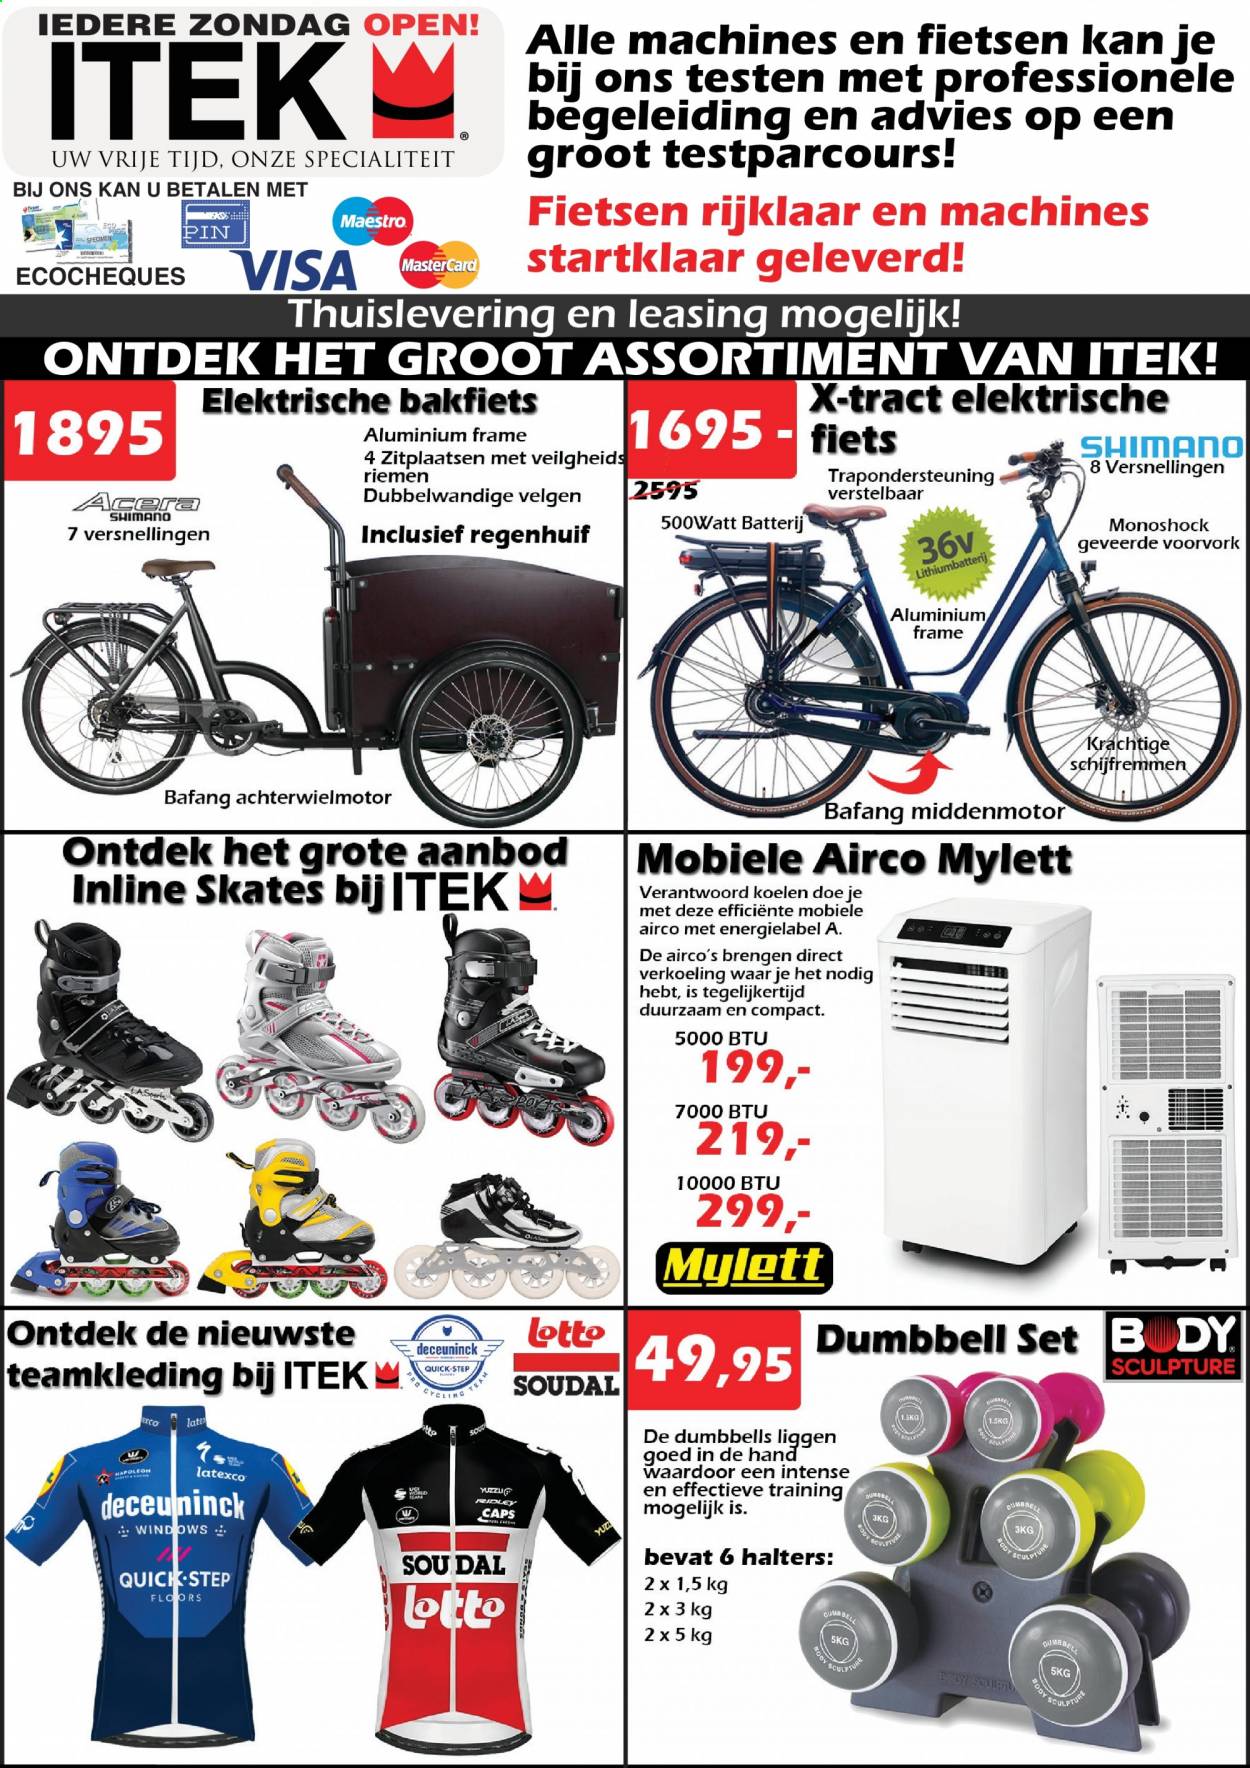 thumbnail - Itek-aanbieding - 15/04/2021 - 09/05/2021 -  producten in de aanbieding - Lotto, Shimano, airco, fiets, mobiele airco. Pagina 1.